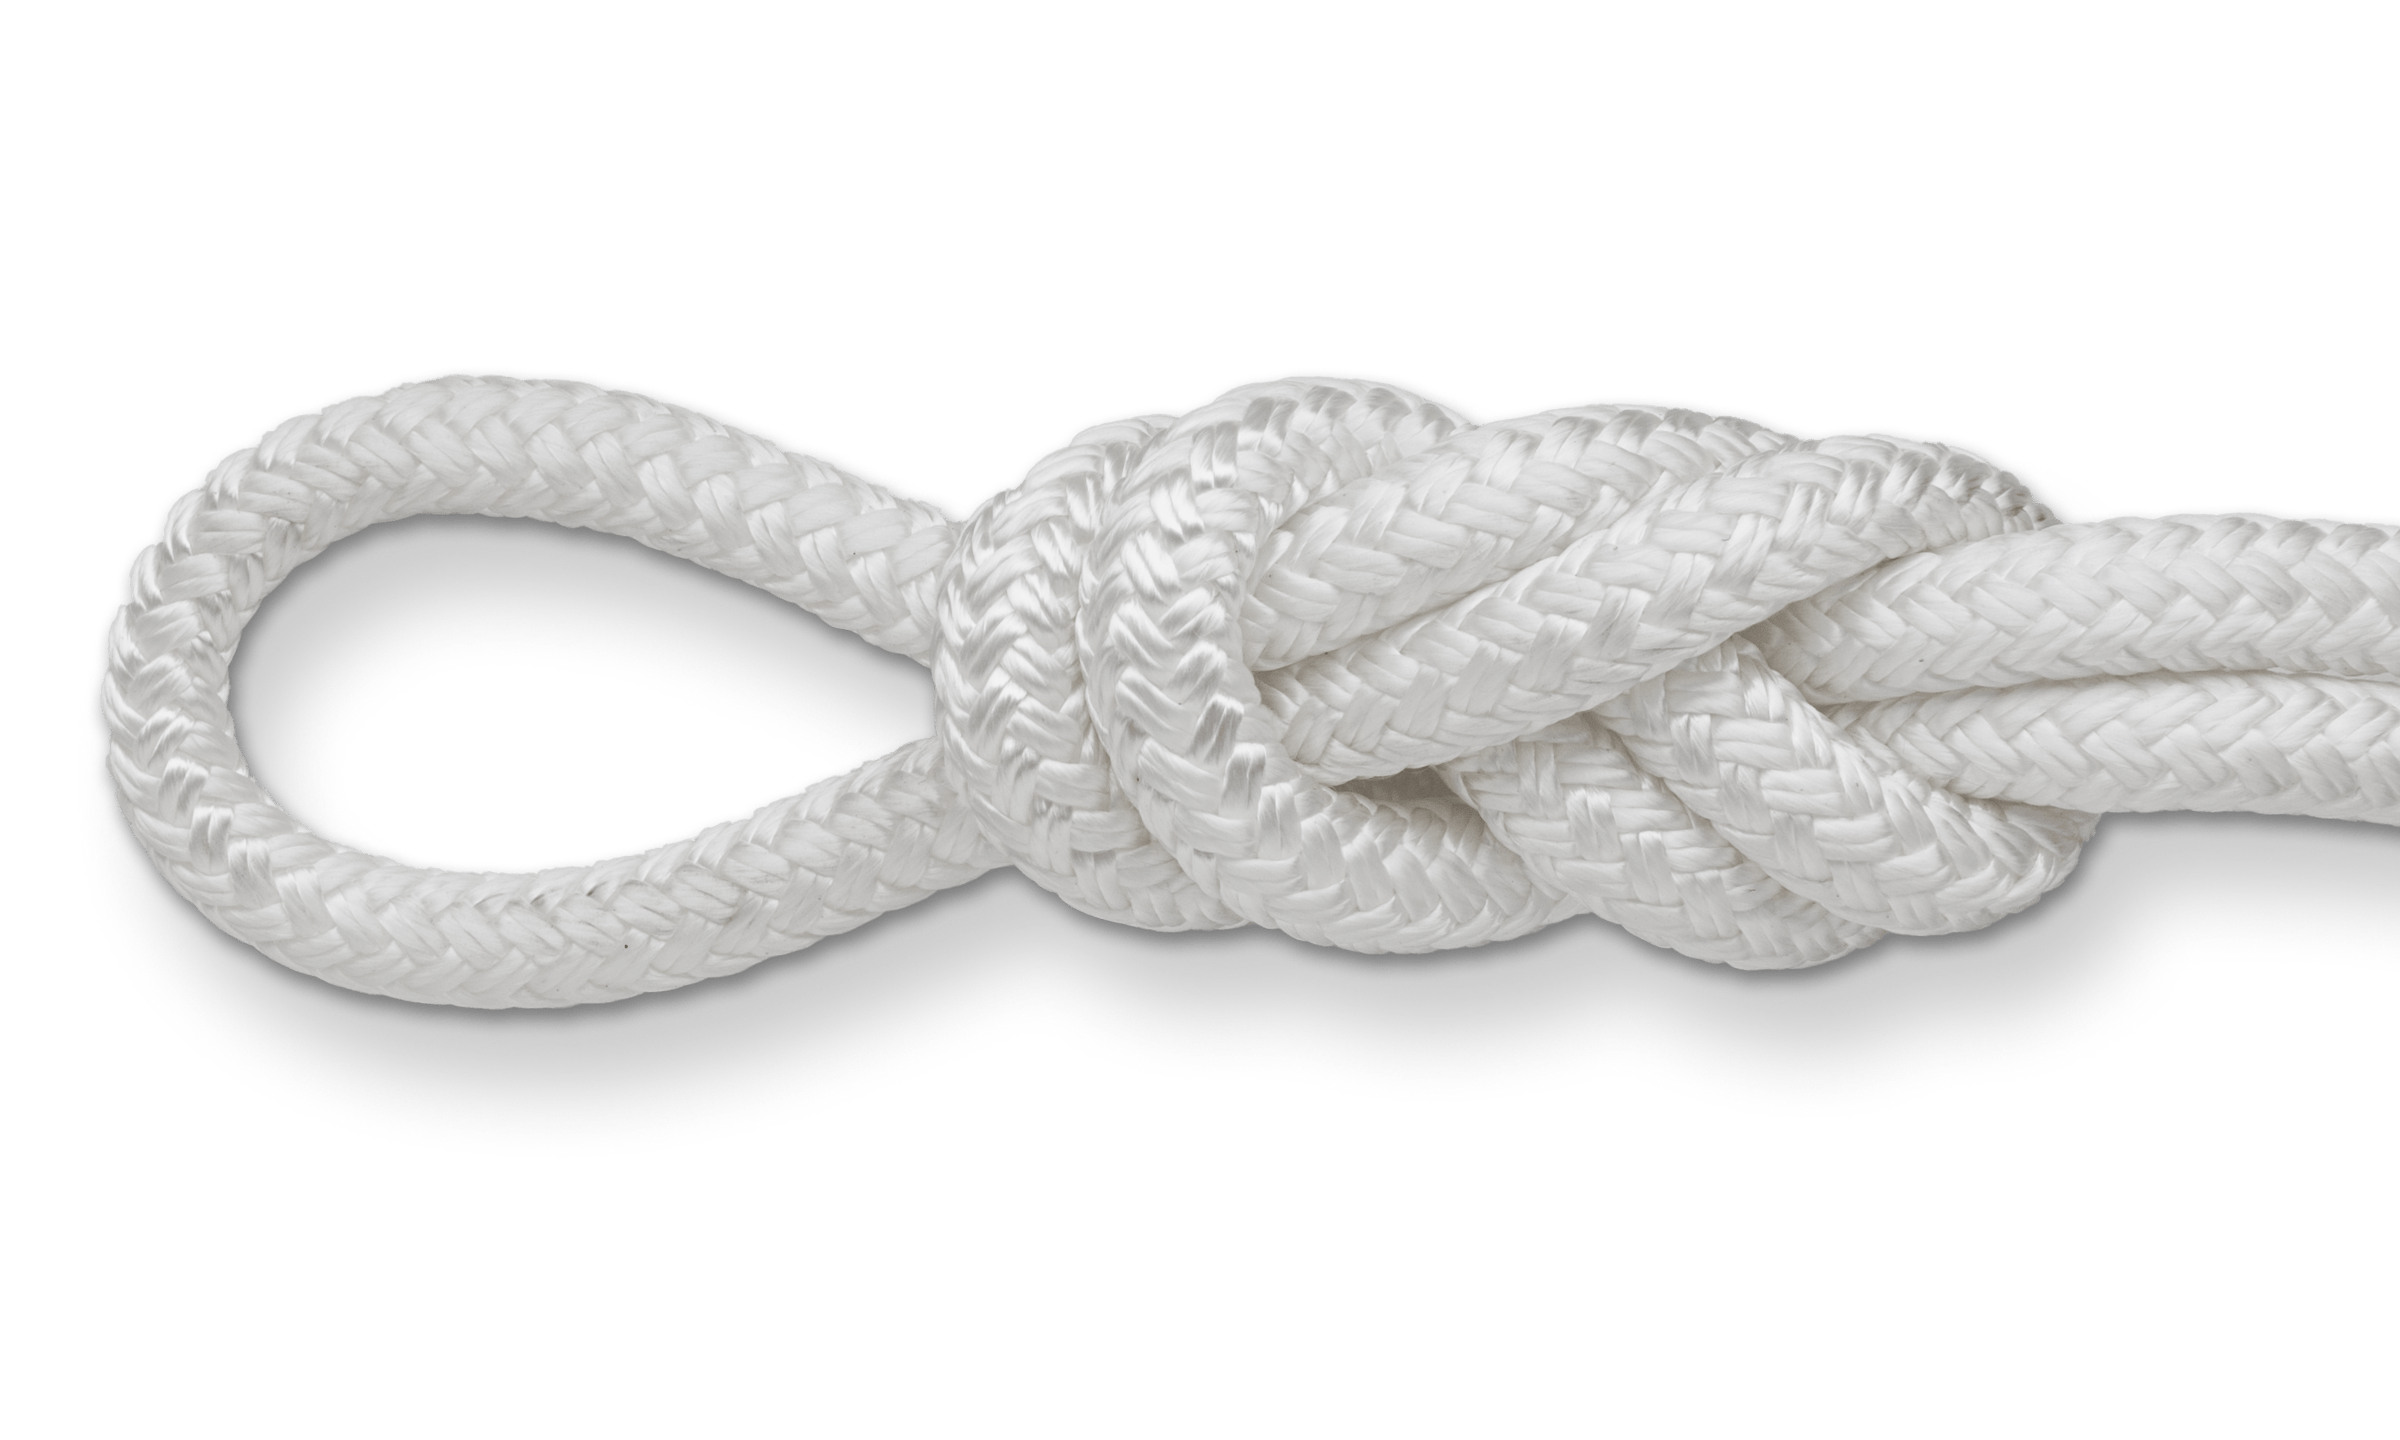 double braid nylon rope